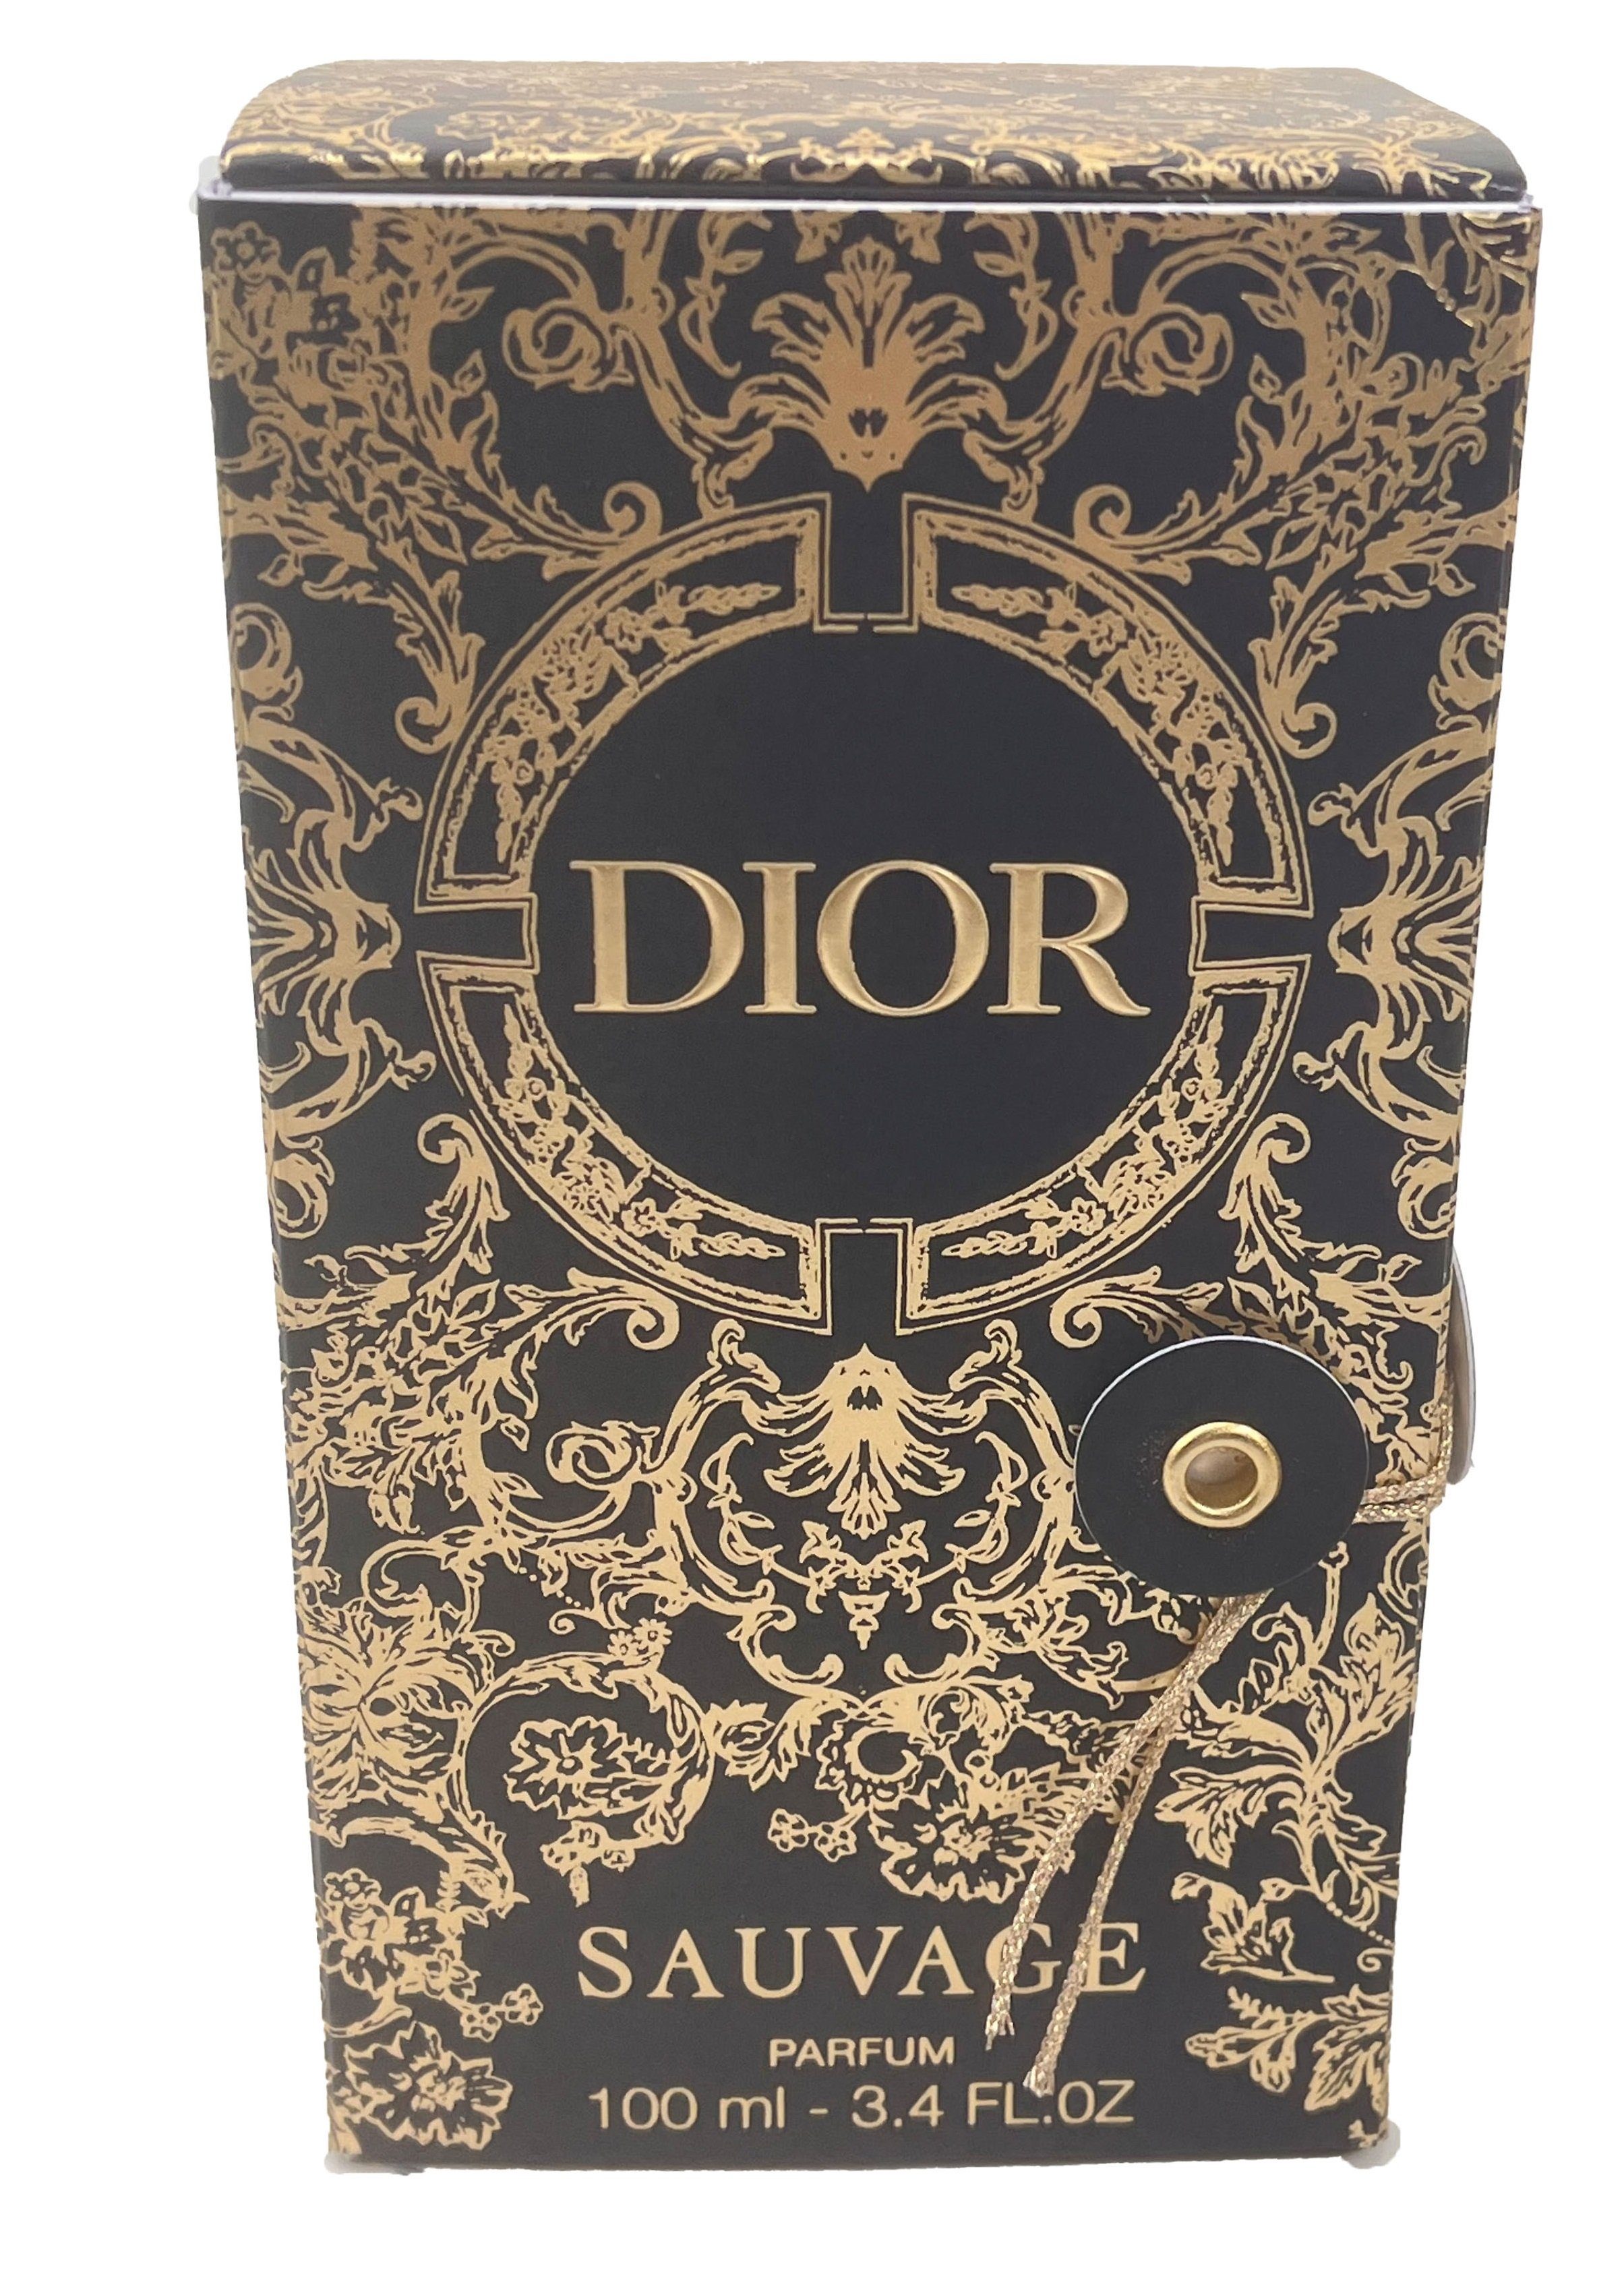 Dior Extrait Parfum Nikolaus,Weihnachten ideal Spray, für Geschenk Sauvage limitierter Edition, Parfum als Dior